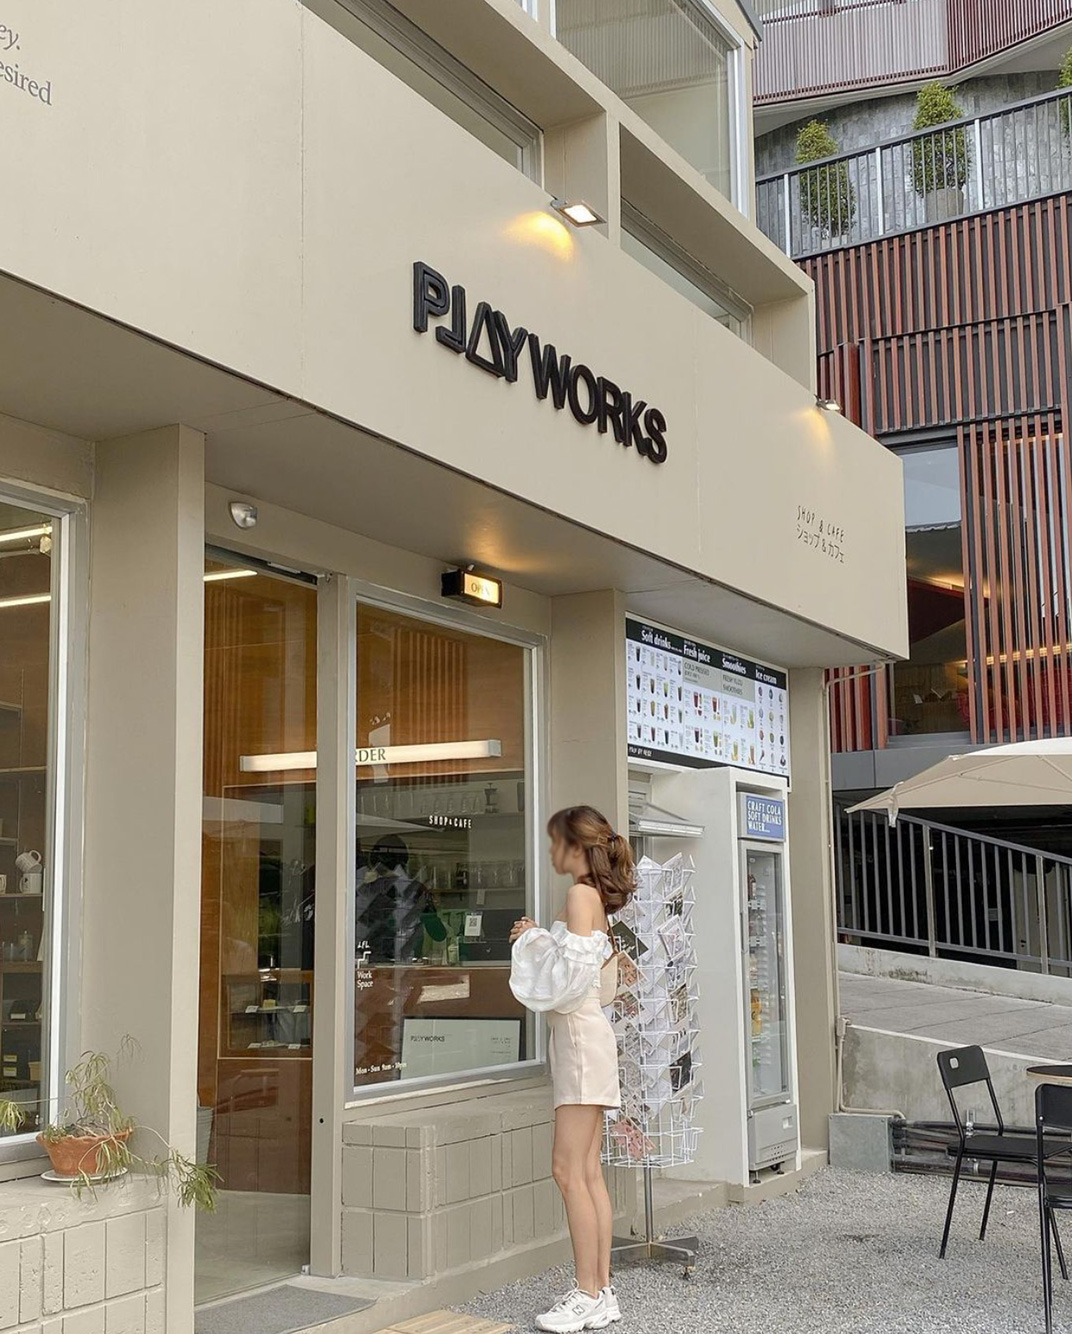 融合空间设计Playworks 泰国 清迈 咖啡店 面包店 文创 木色 logo设计 vi设计 空间设计